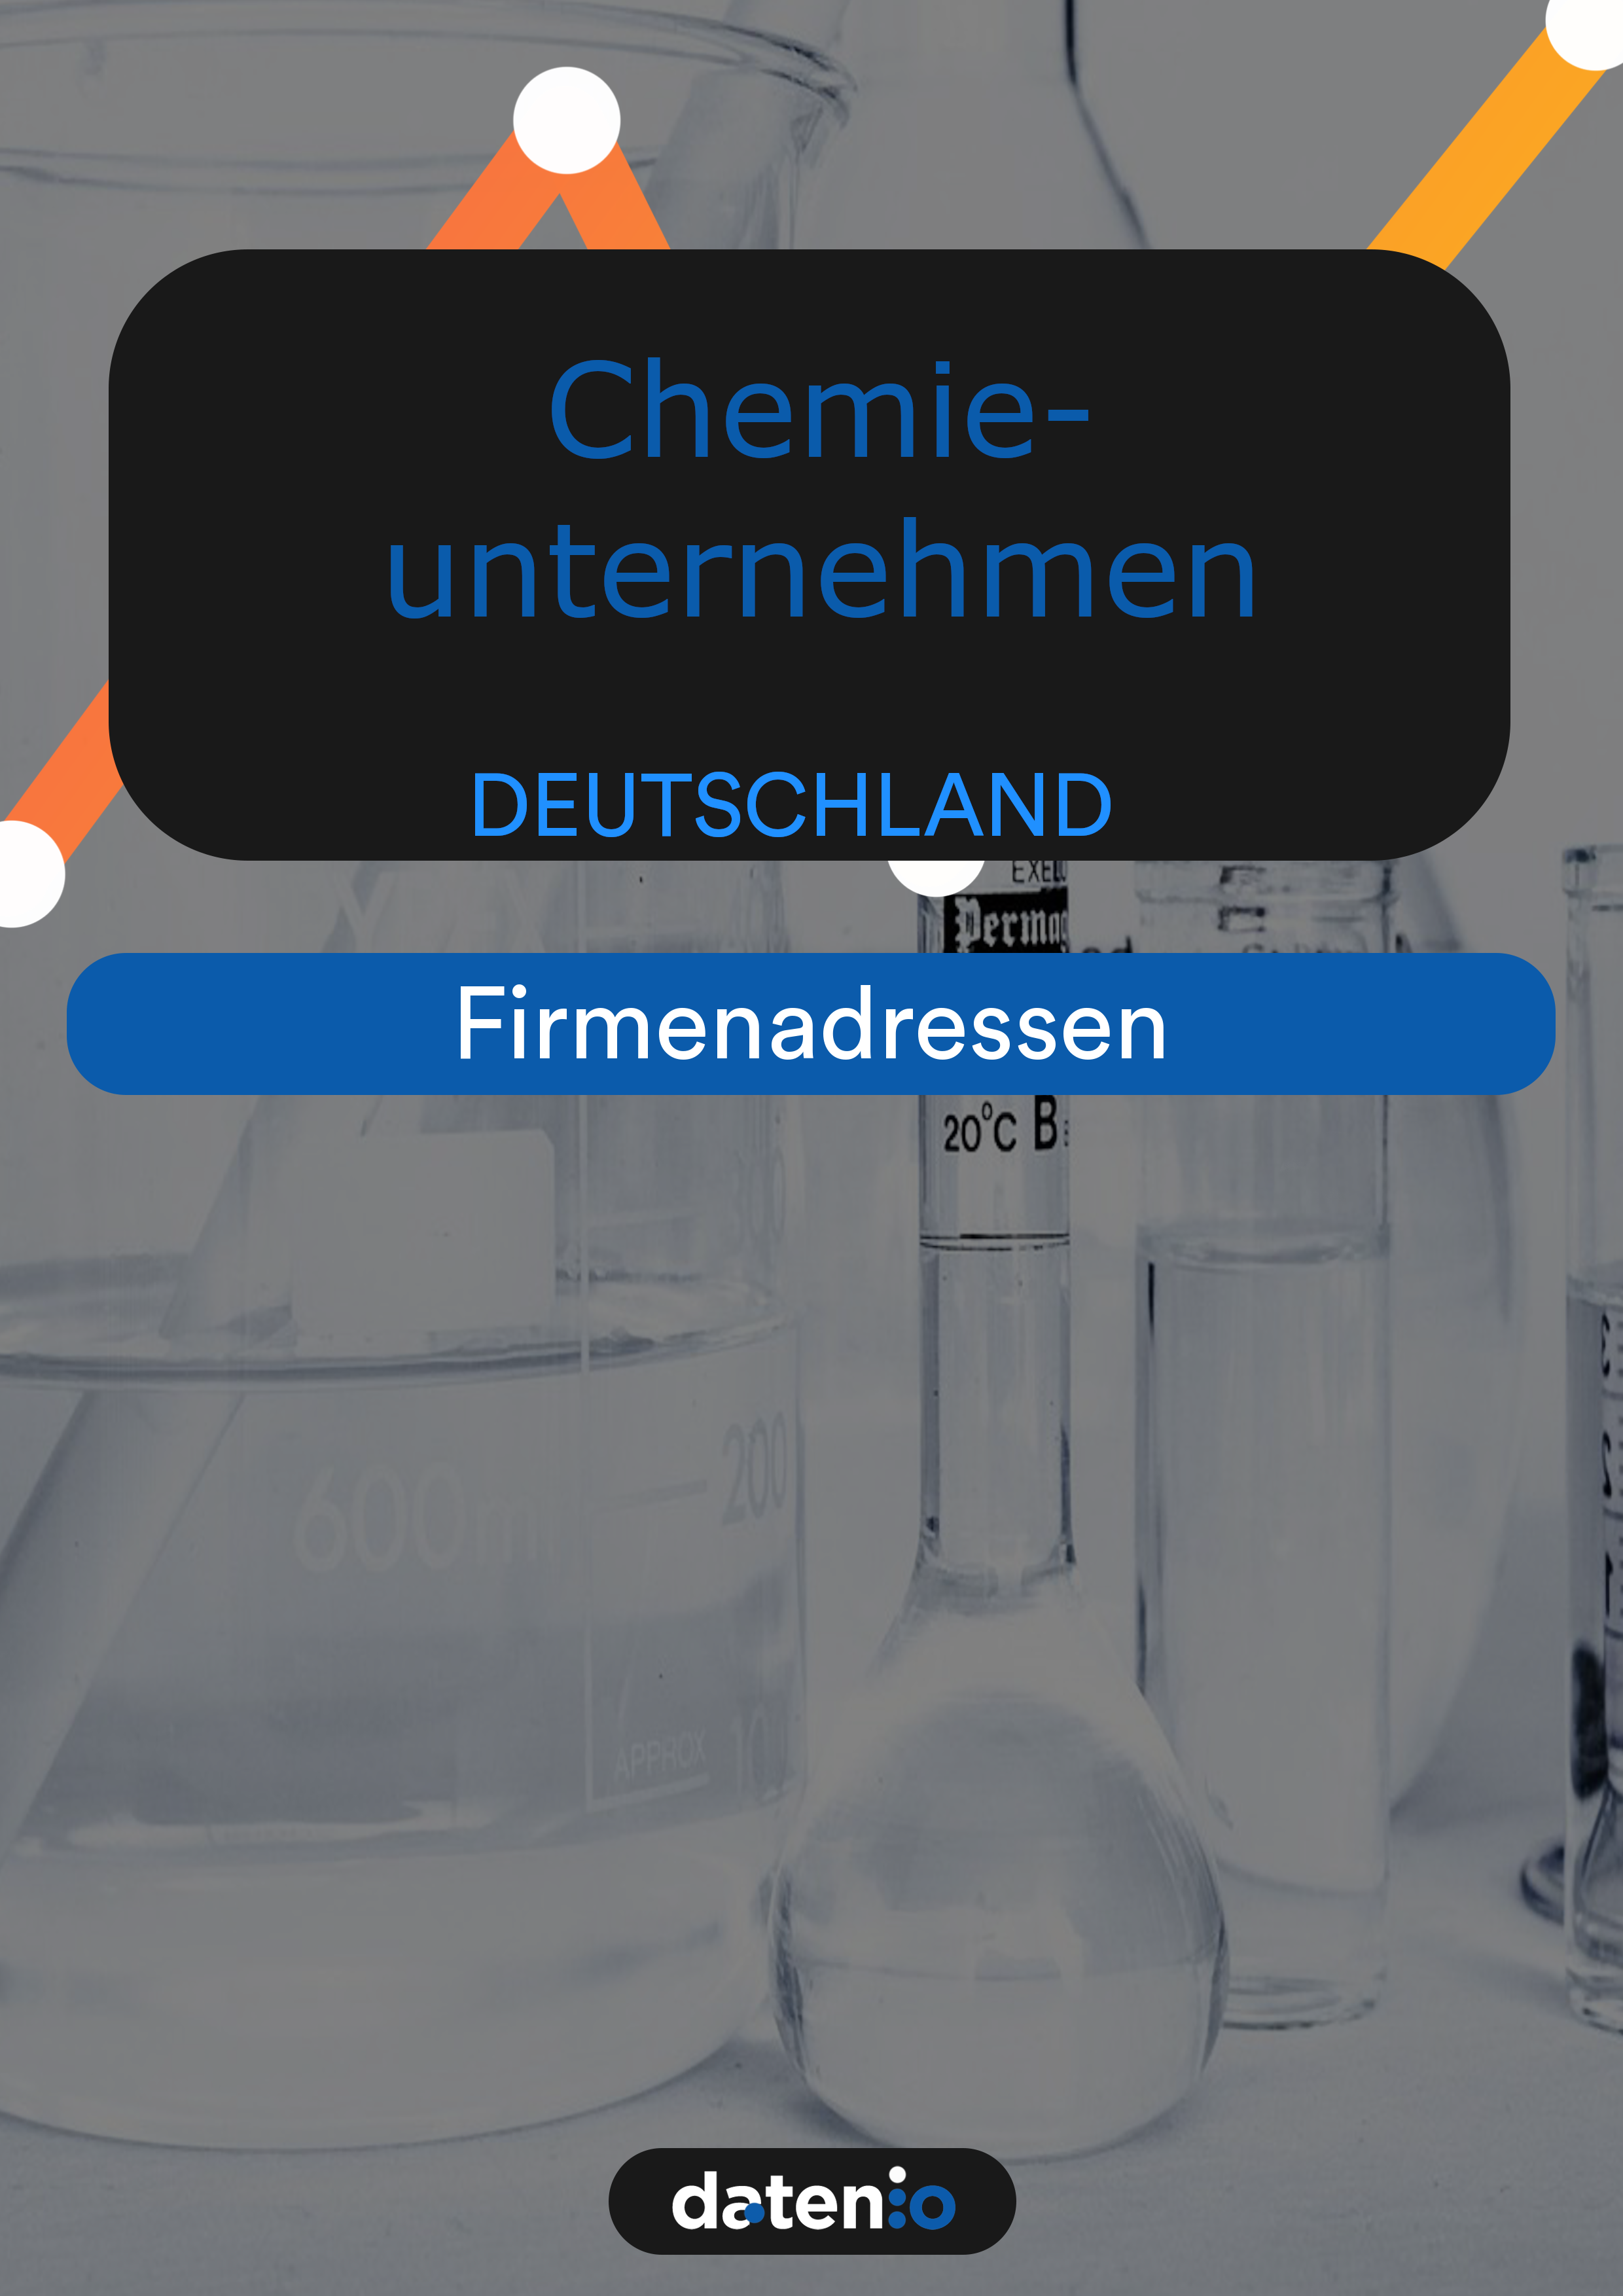 chemieunternehmen